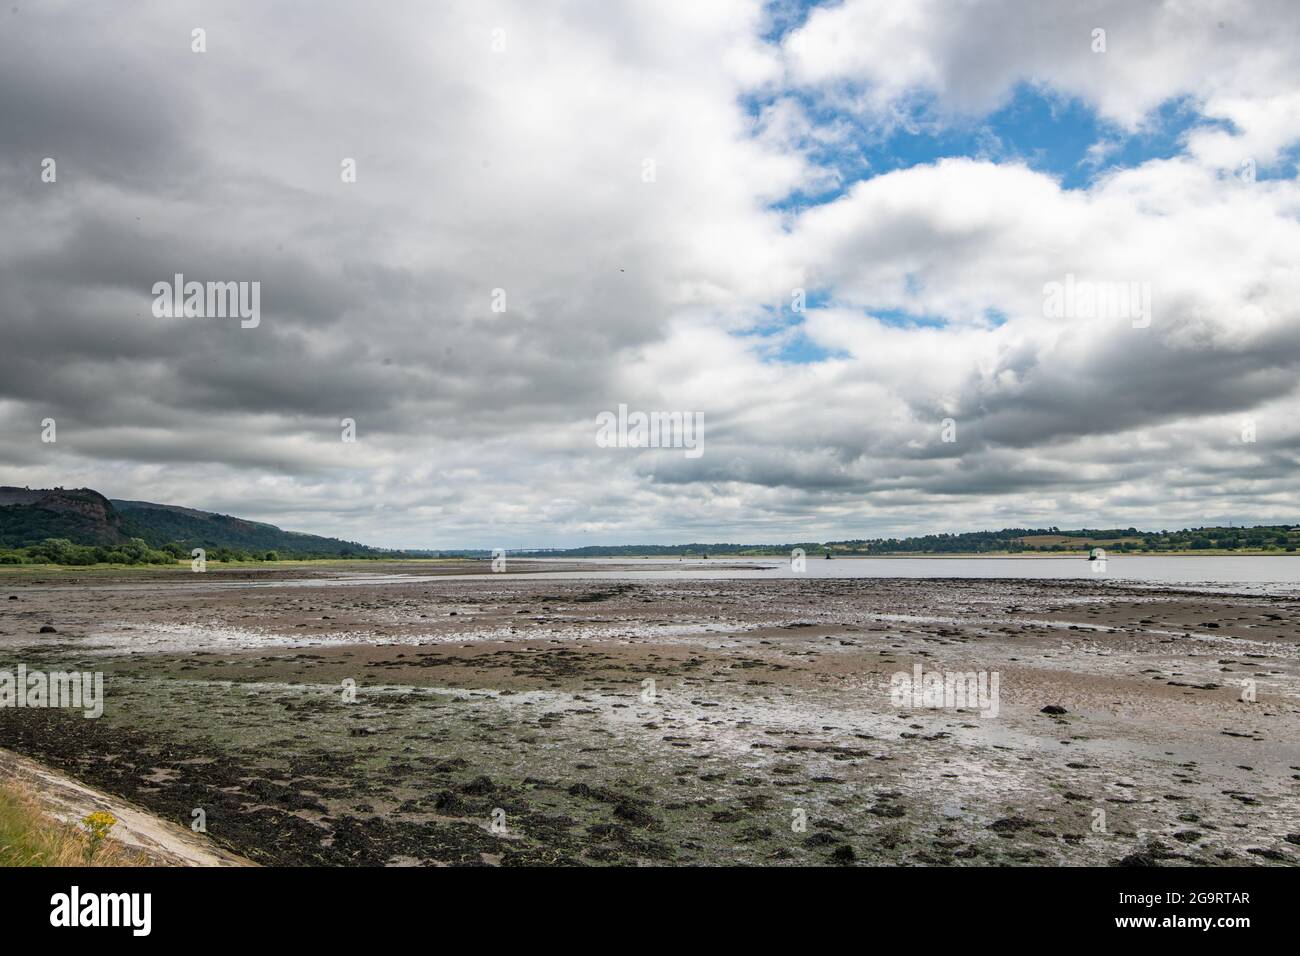 River Clyde mudflats, Dumbarton, Écosse, Royaume-Uni Banque D'Images